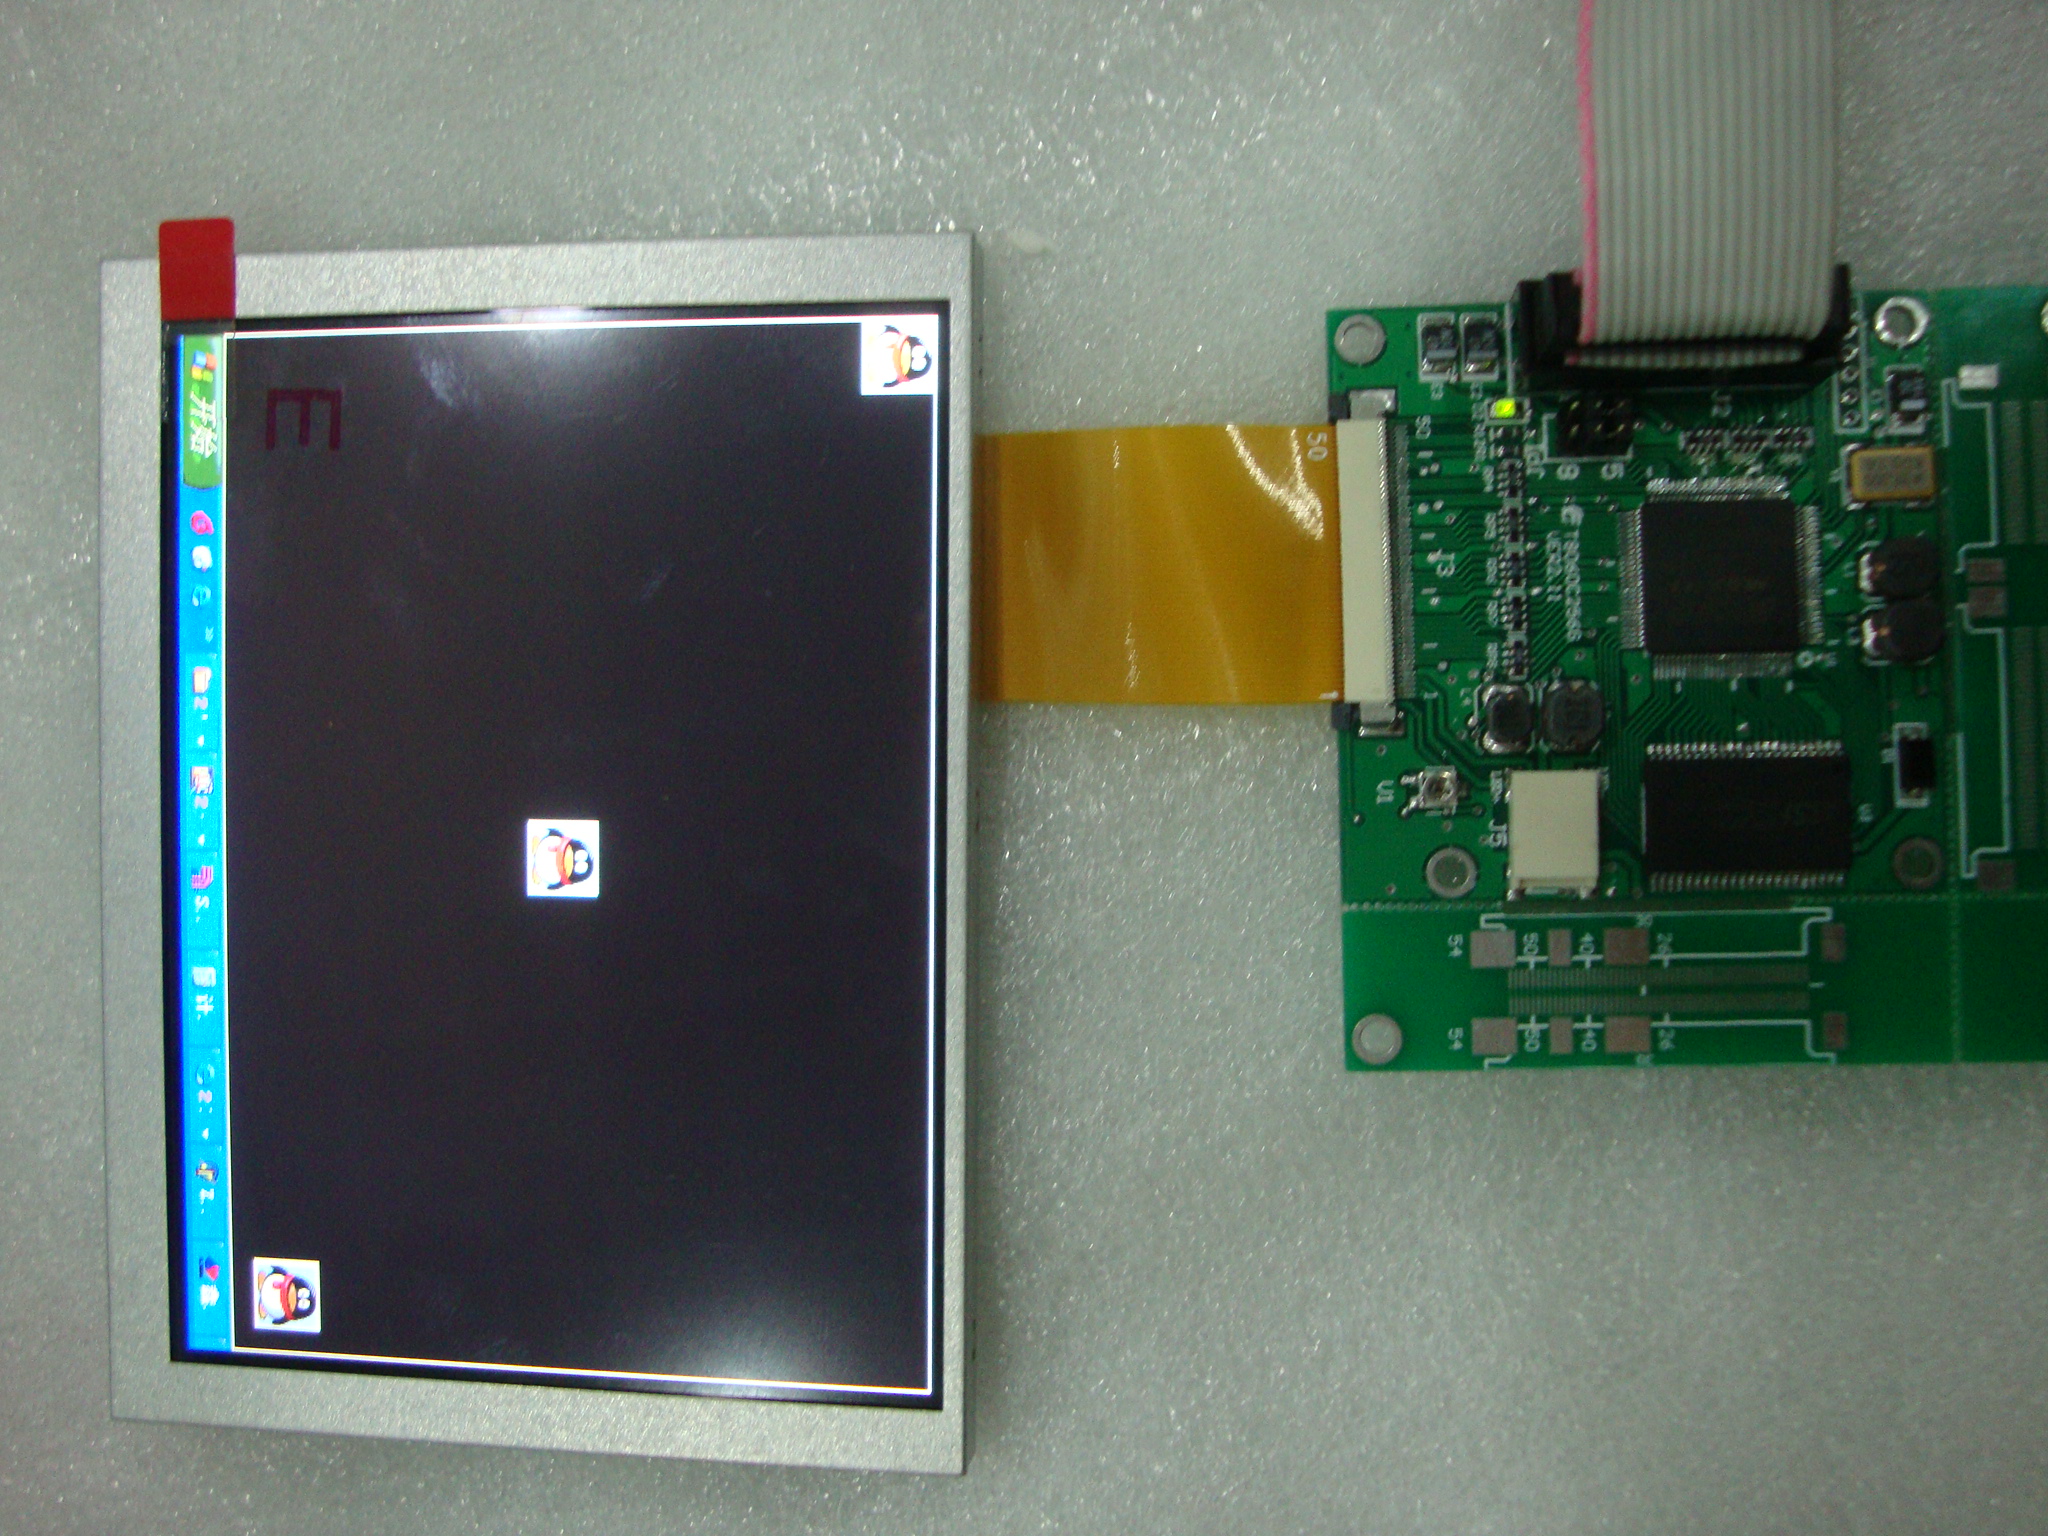 方显 供应仪器仪表TFT LCD控制器  厂家大量批发 量大从优 品质售后有保障